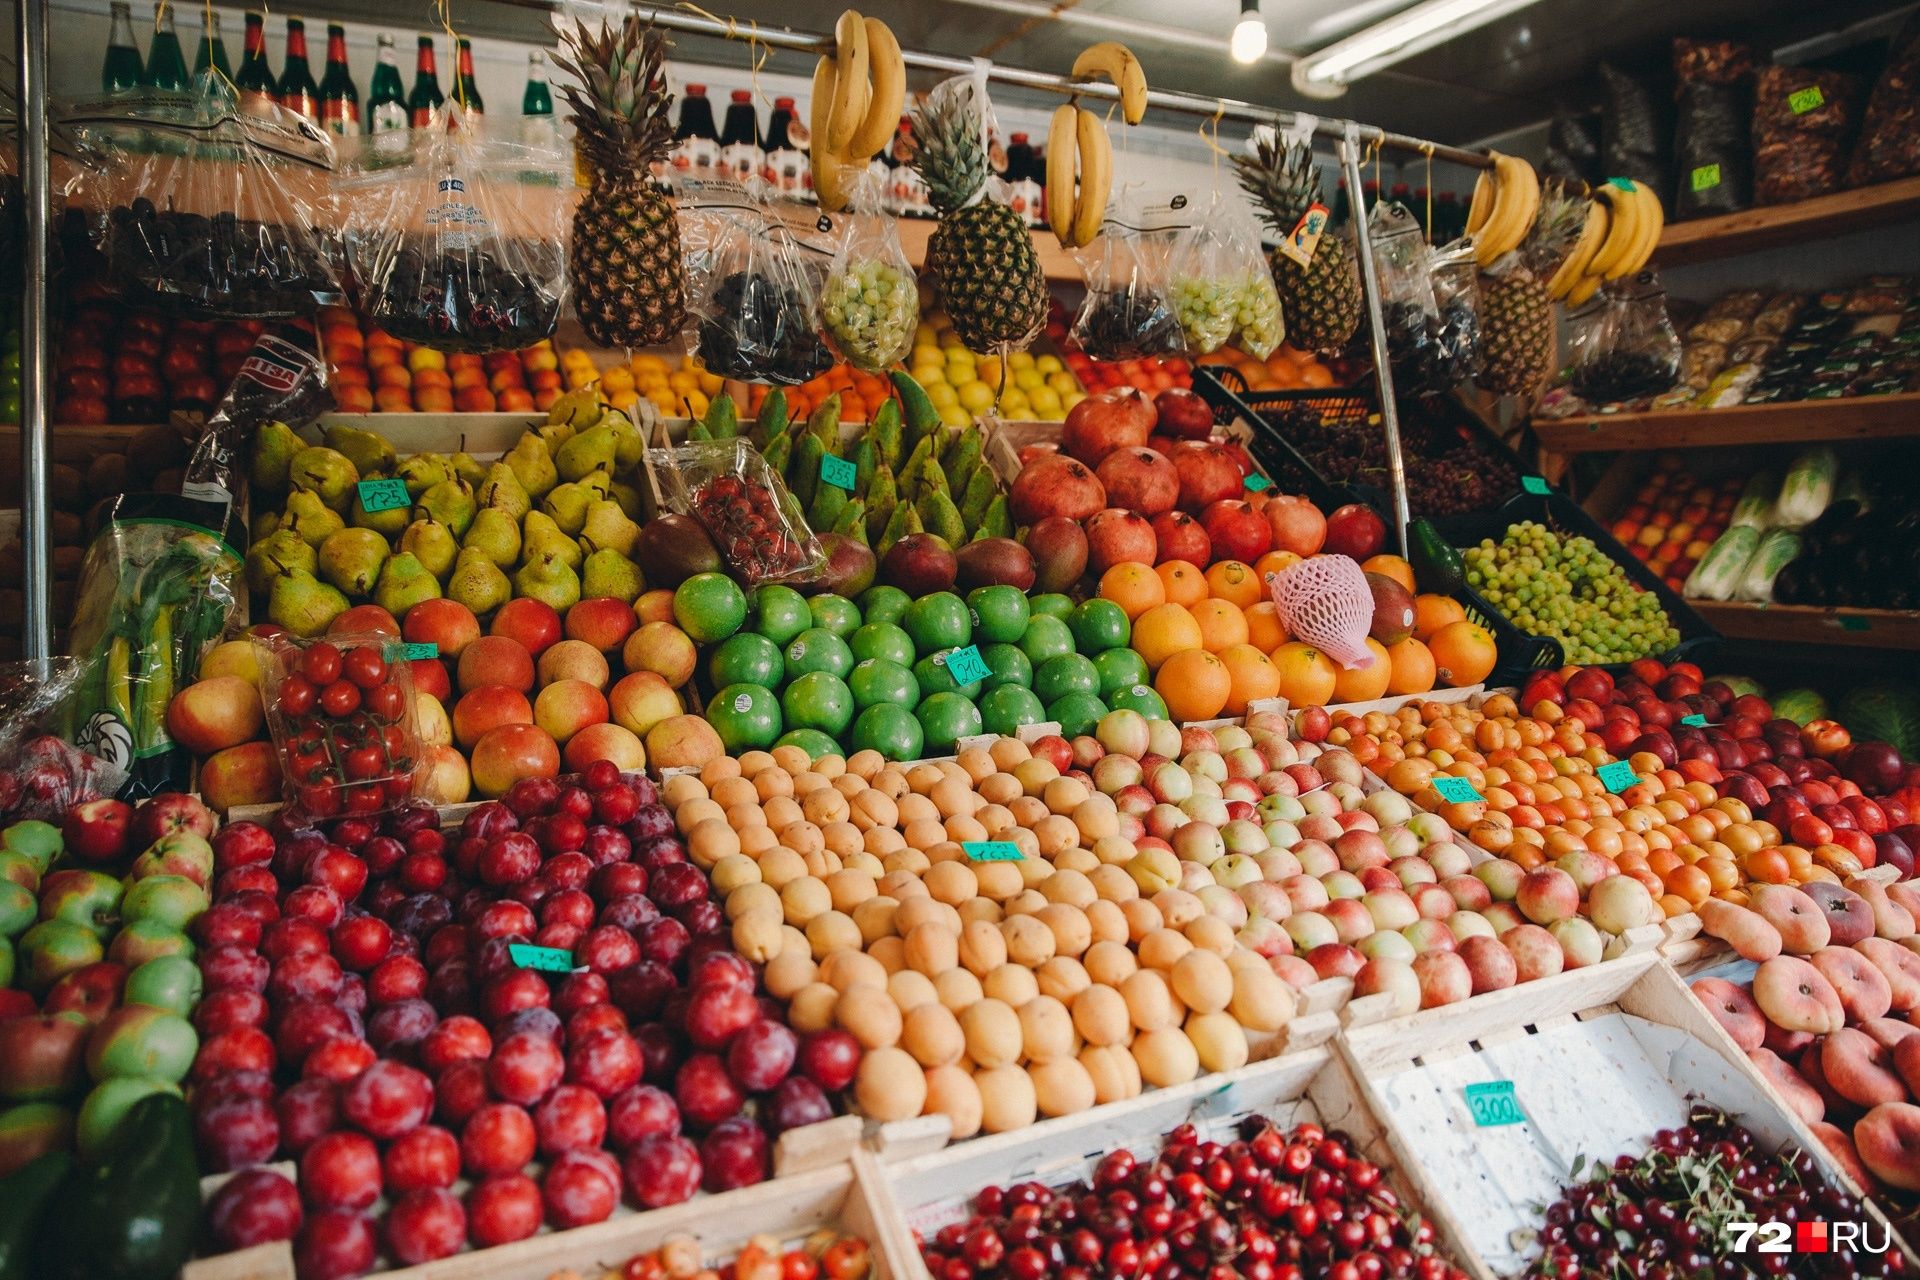 Турецкие овощи и фрукты больше остальных напичканы пестицидами – Парагро